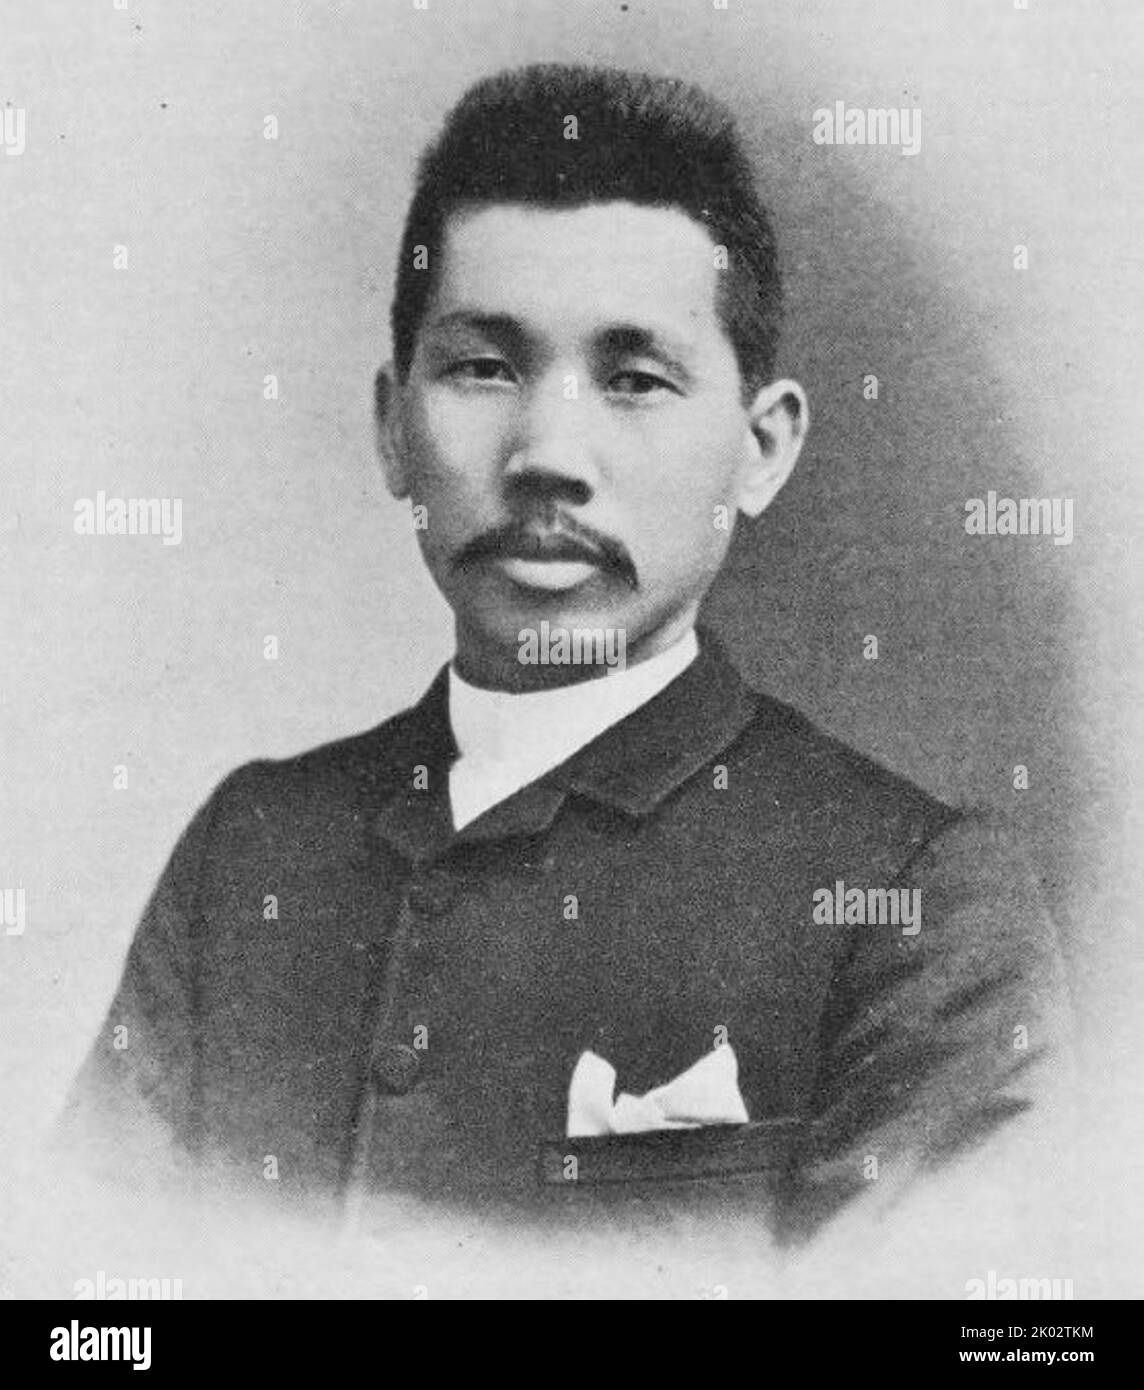 Katayama Sen (1859-1933). Sen war ein früher japanischer marxistischer politischer Aktivist und Journalist, eines der ursprünglichen Mitglieder der Kommunistischen Partei Amerikas und Mitbegründer der Kommunistischen Partei Japans im Jahr 1922. Stockfoto